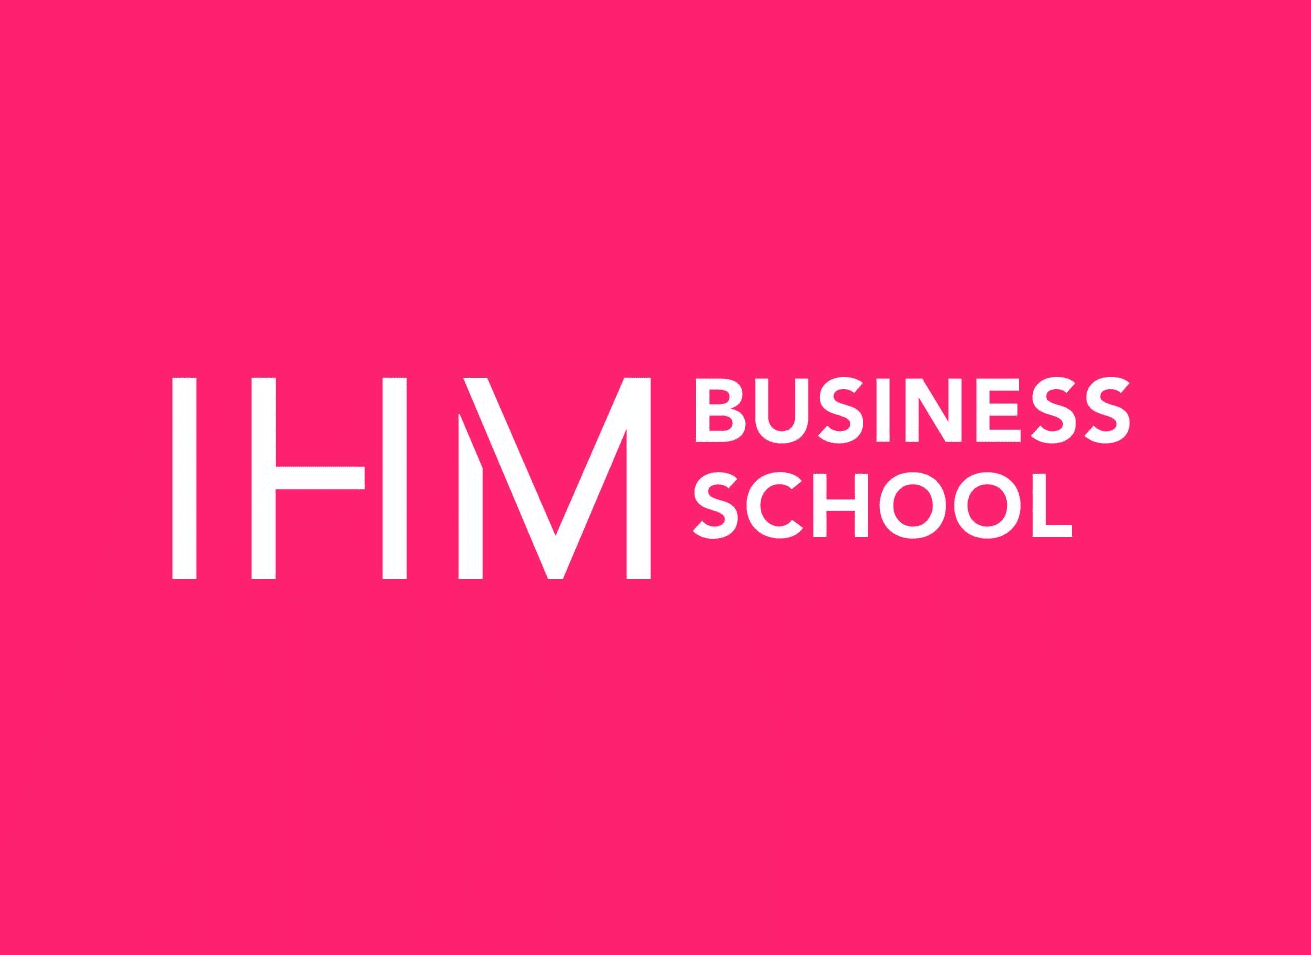 IHM Business School lanserar ny kurs inom Live Shopping tillsammans med Streamify | IT-Retail.se